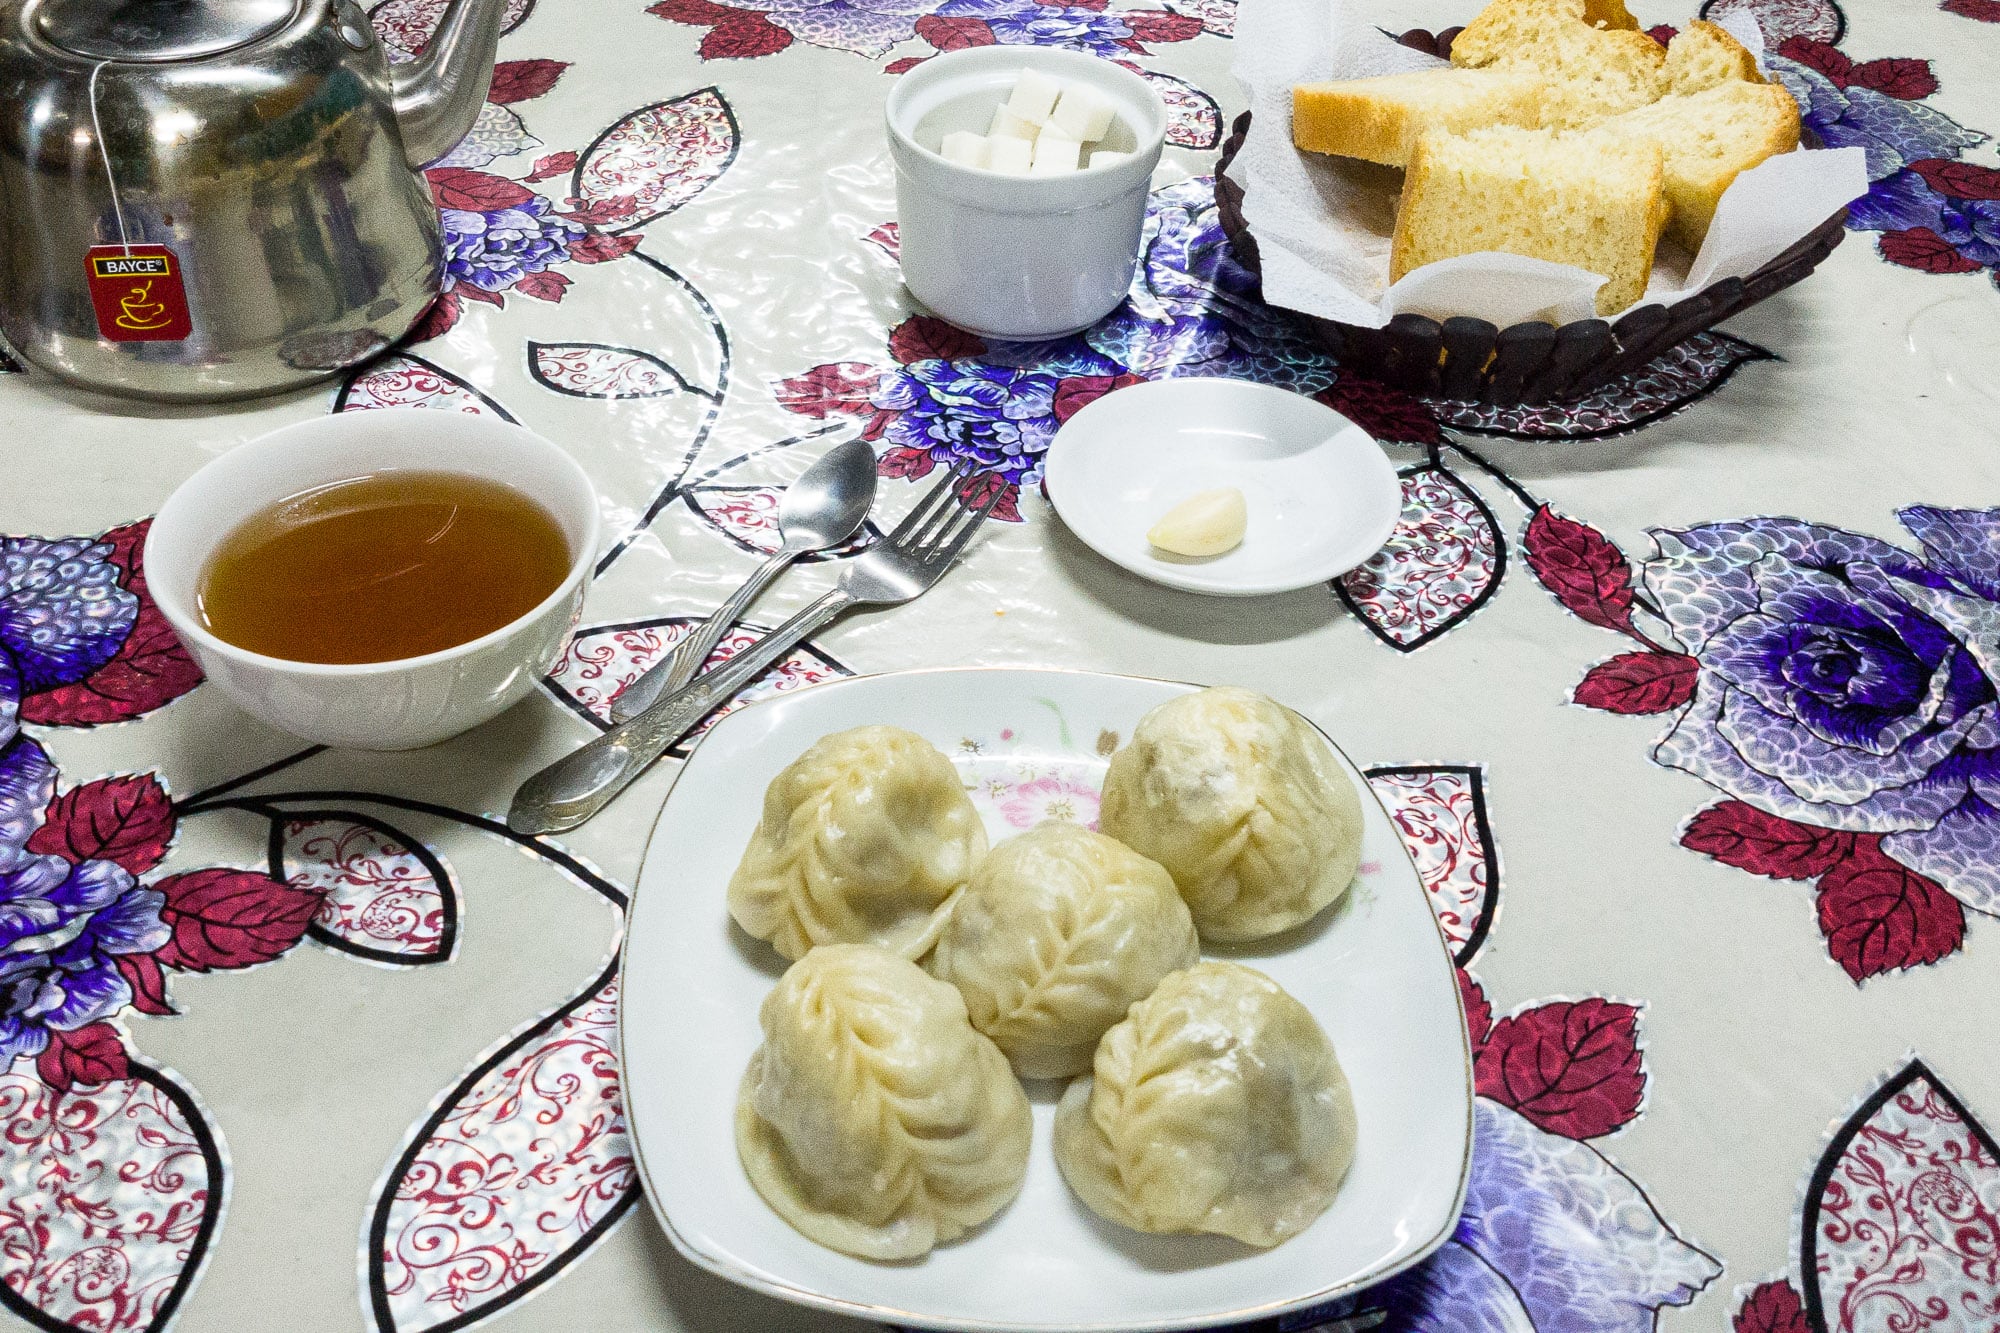 manti dumplings for dinner